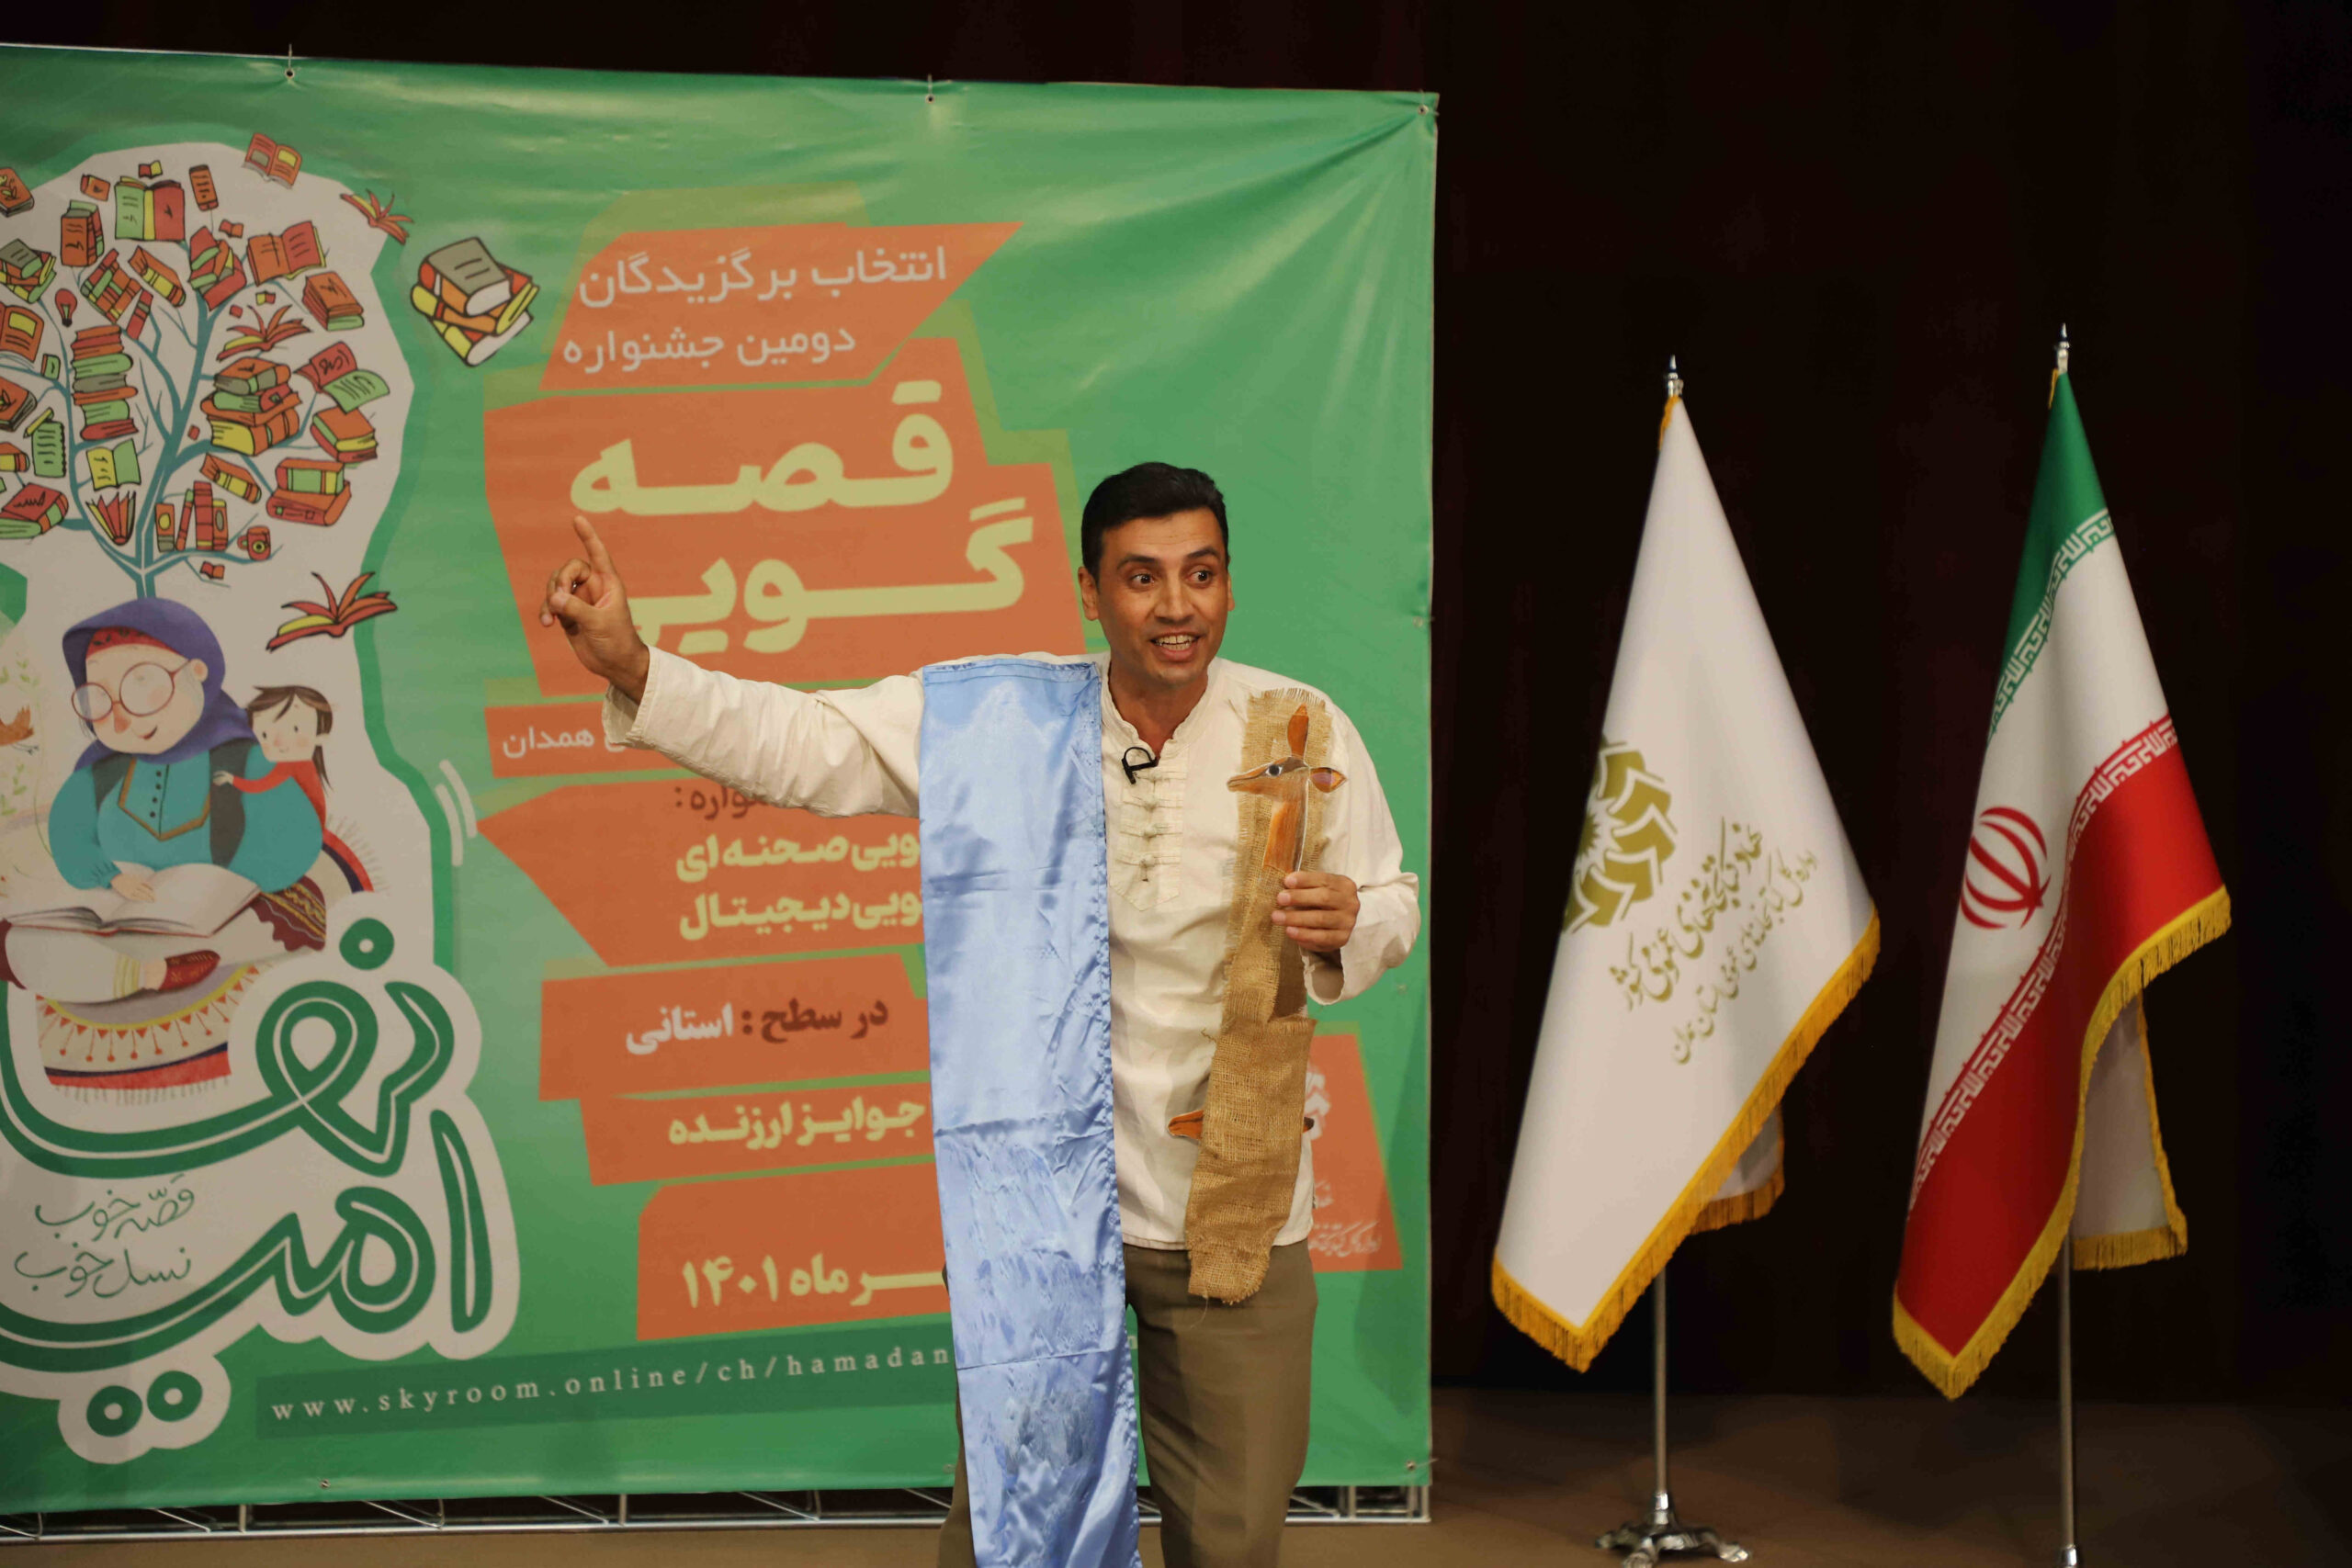 نفرات برتر مرحله استانی دومین دوره جشنواره قصه گویی نهال امید اعلام شد